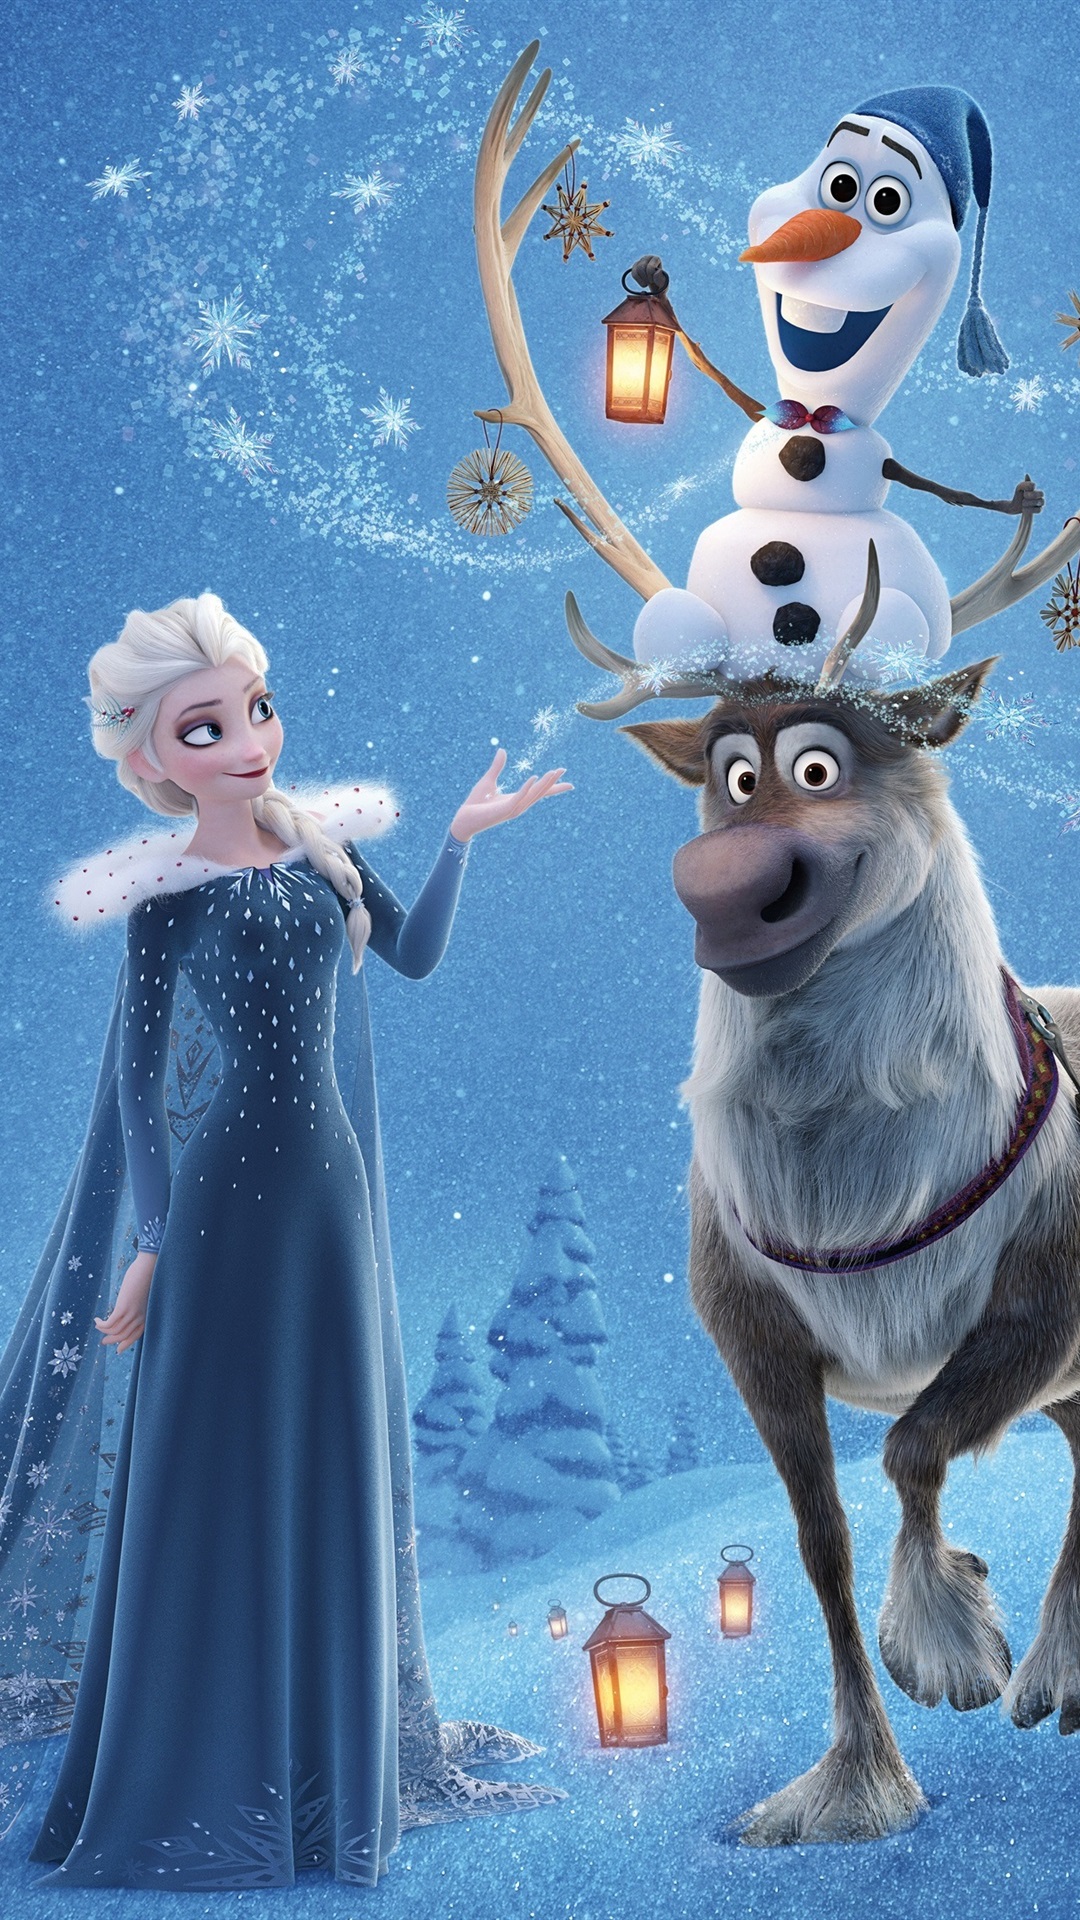 wallpaper de frozen,animated cartoon,reindeer,animation,deer,cartoon